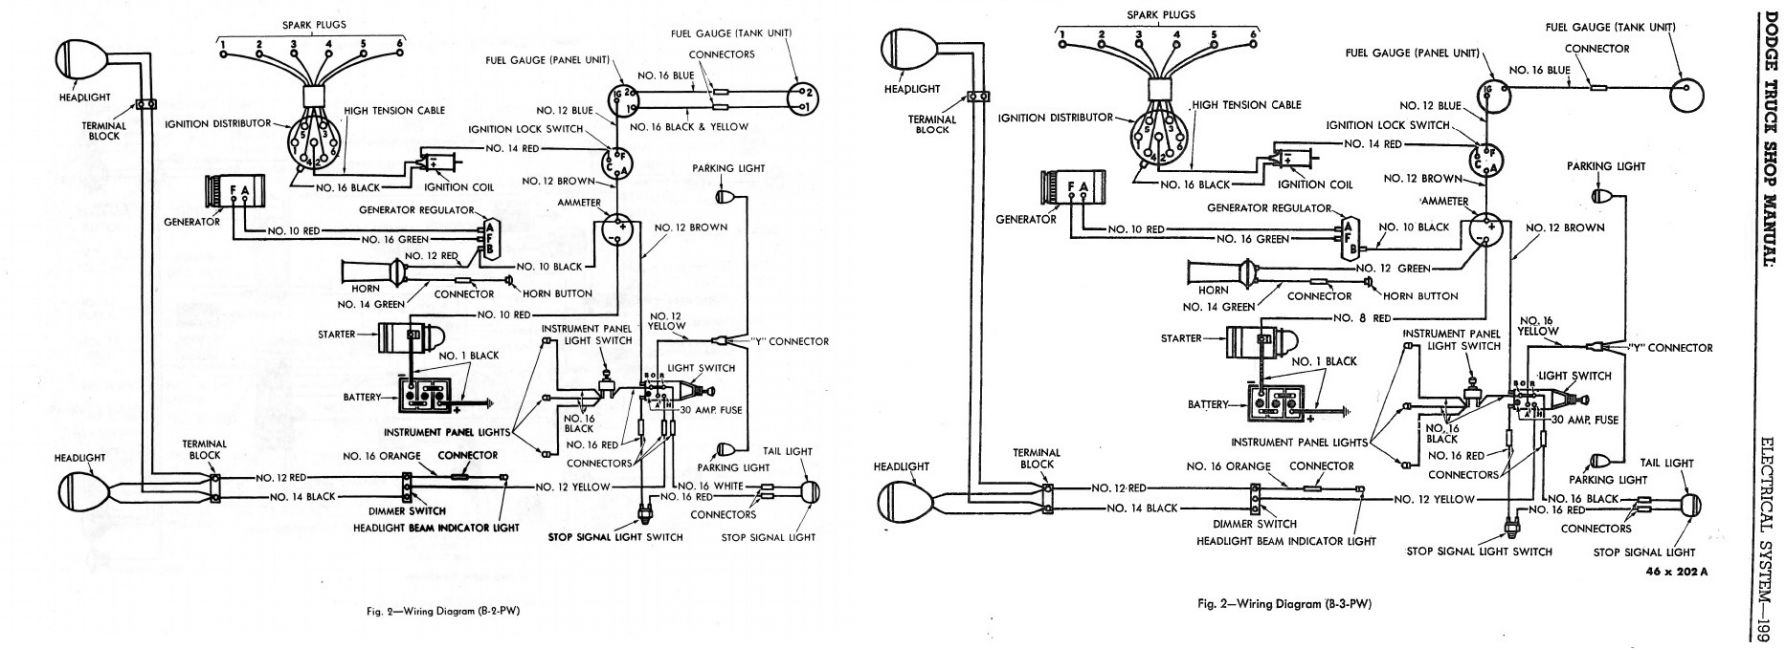 B2-B3PW Wire Diagrams
